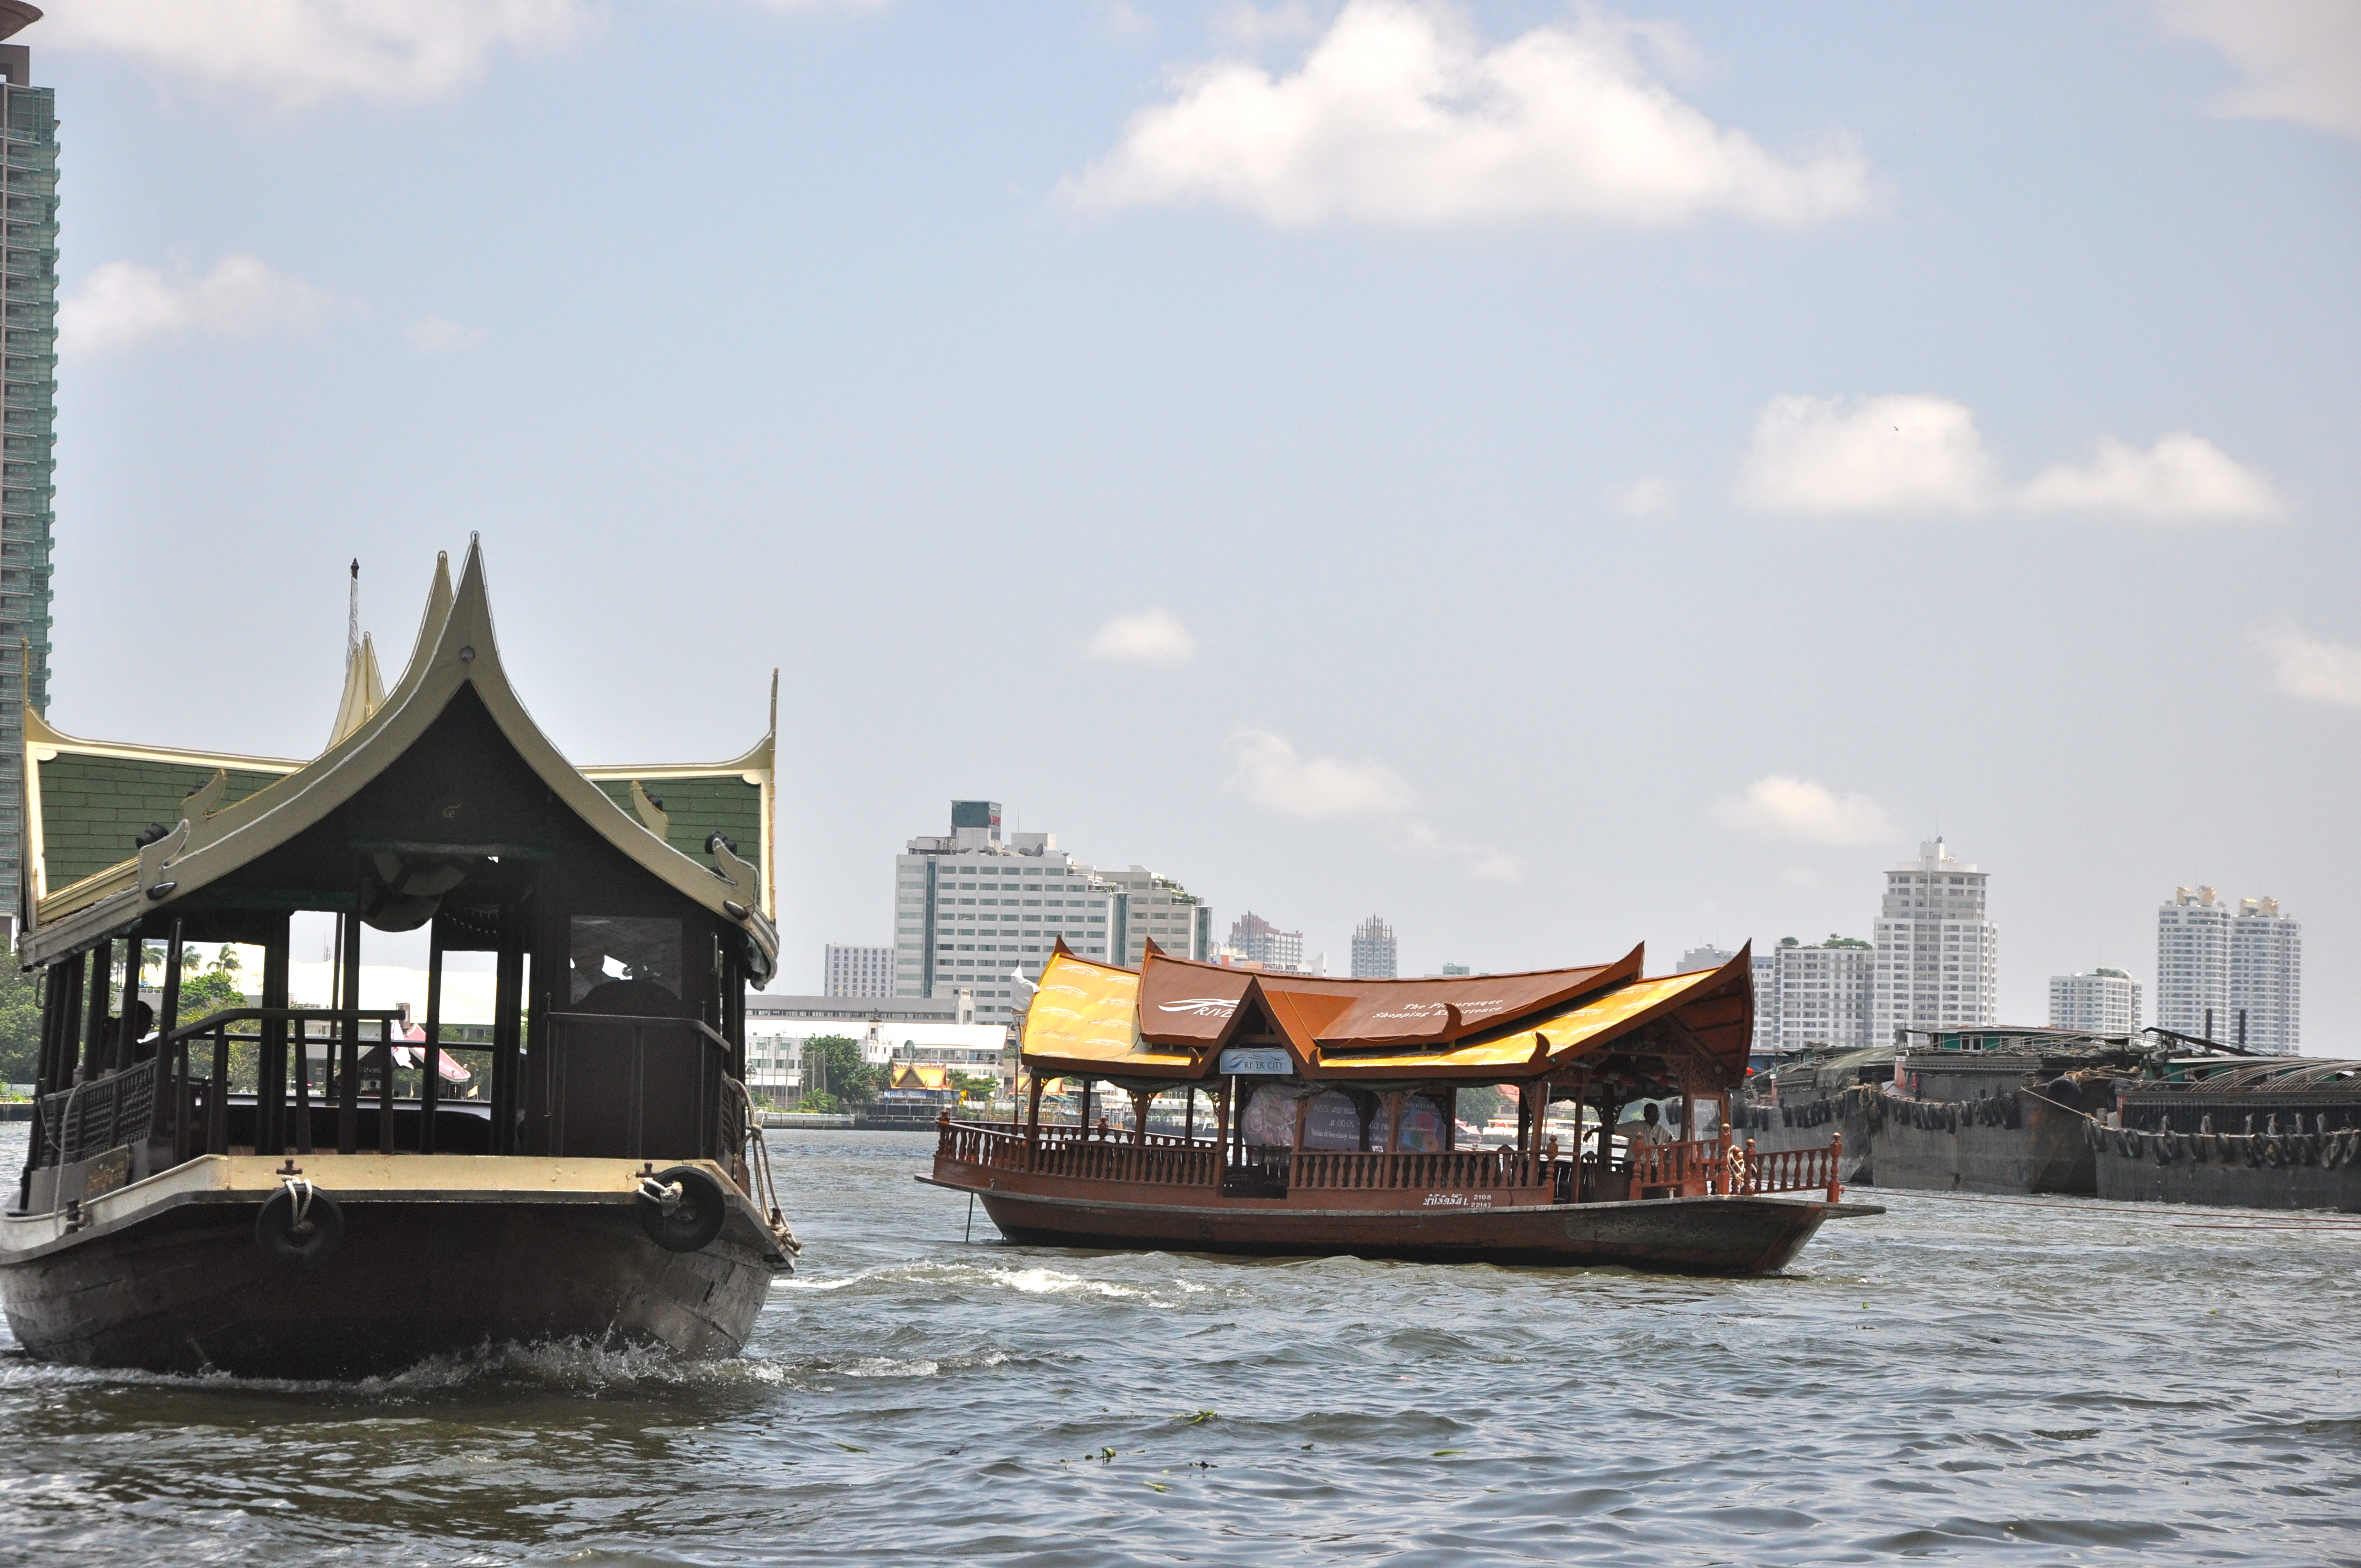 Bangkok, a melhor visão é do Chao Phraya